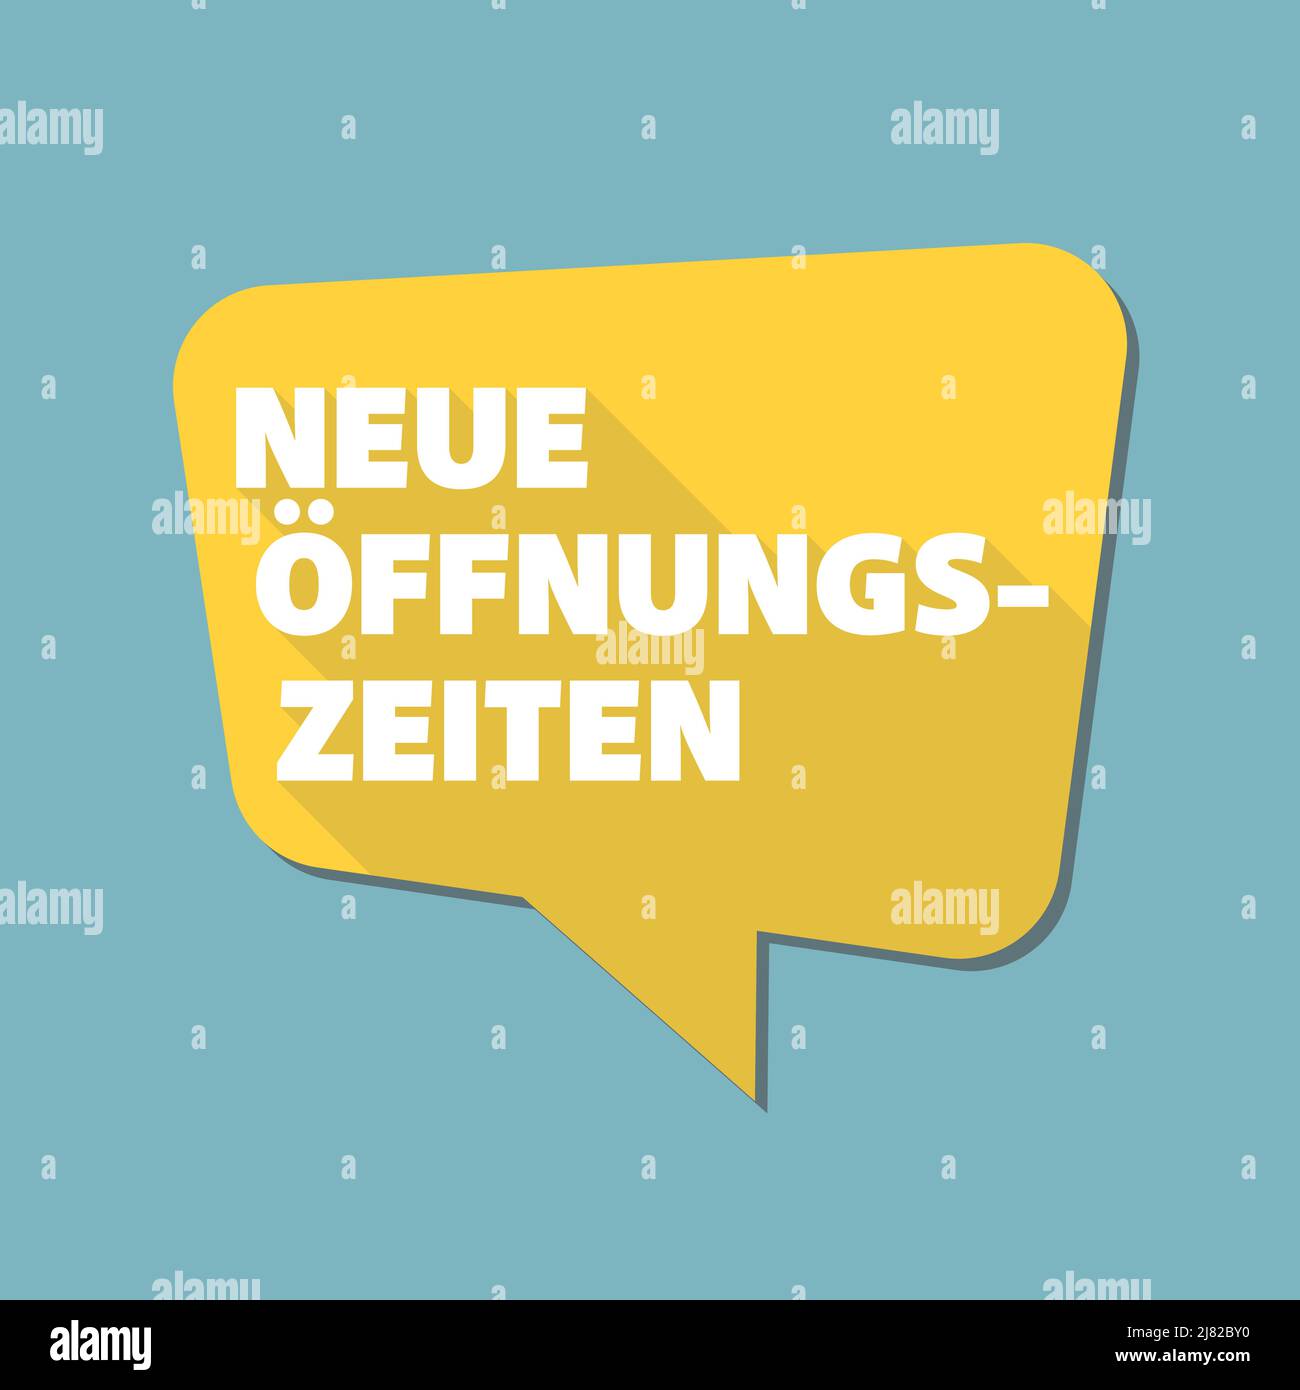 Fumetto con testo NEUE OFFNUNGSZEITEN, tedesco per nuovi orari di apertura o orario di lavoro cambiato, illustrazione vettoriale Illustrazione Vettoriale